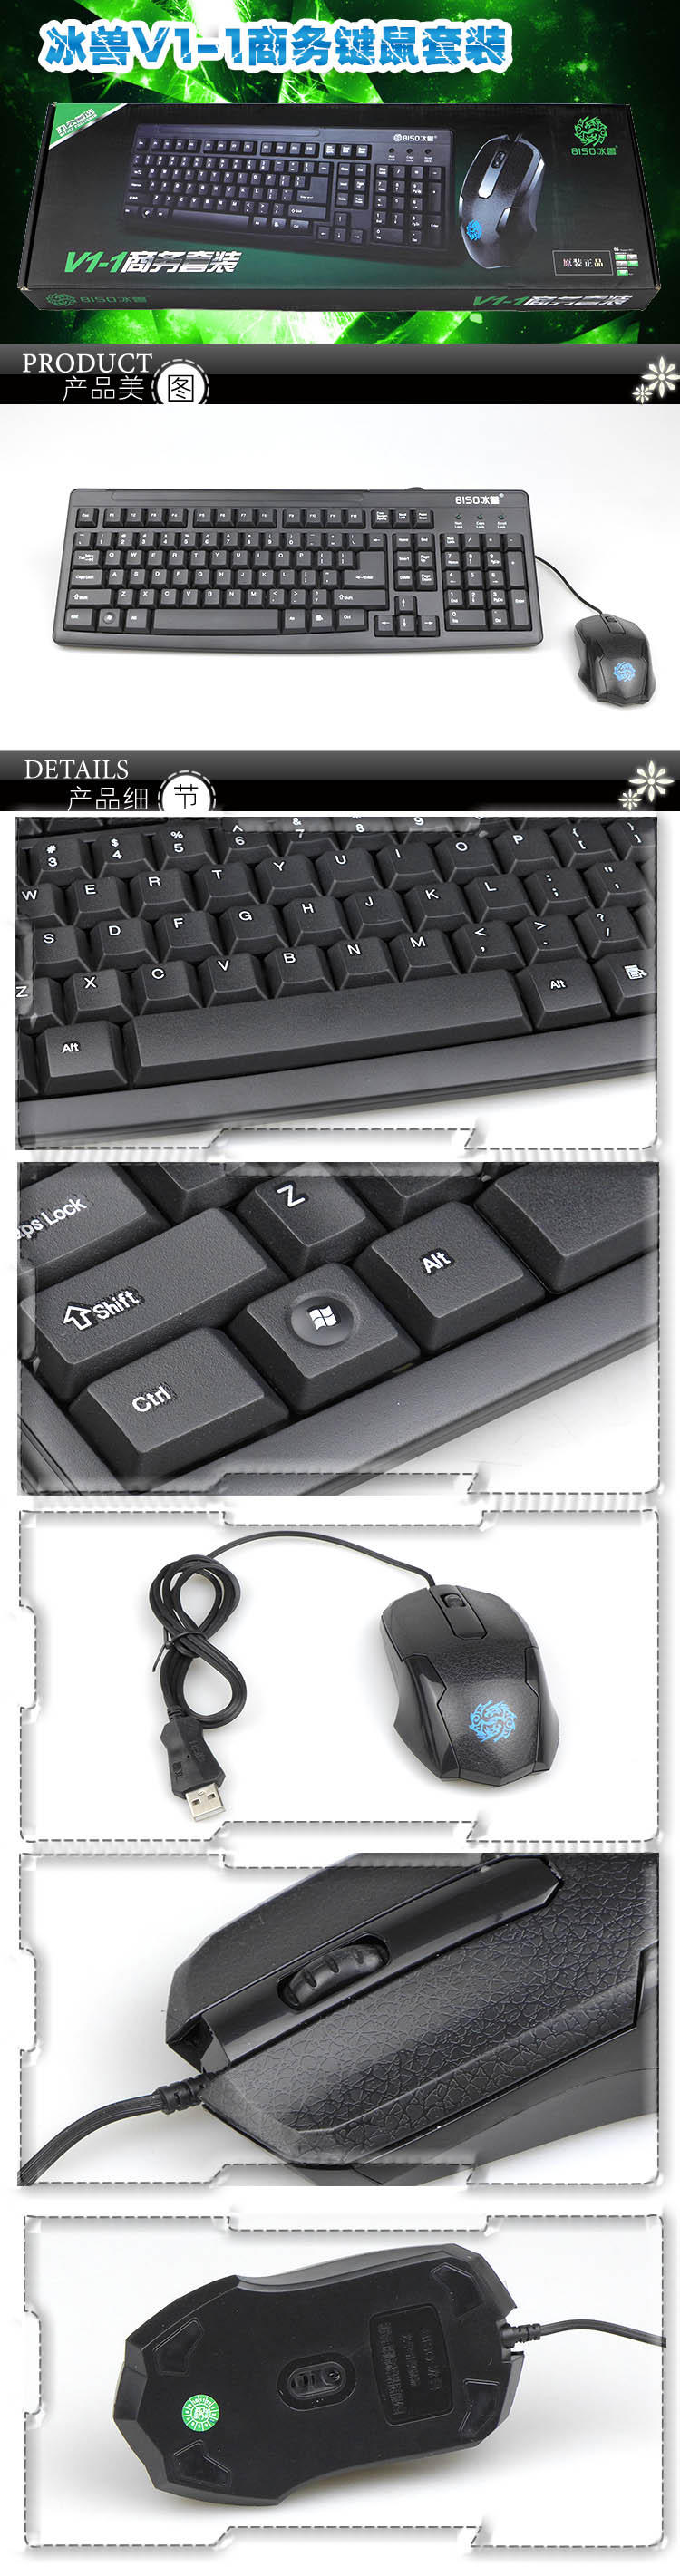 冰兽V1-1商务键鼠套装 防滑纹路细腻磨砂 有线 鼠标+键盘套装 网吧办公游戏套件